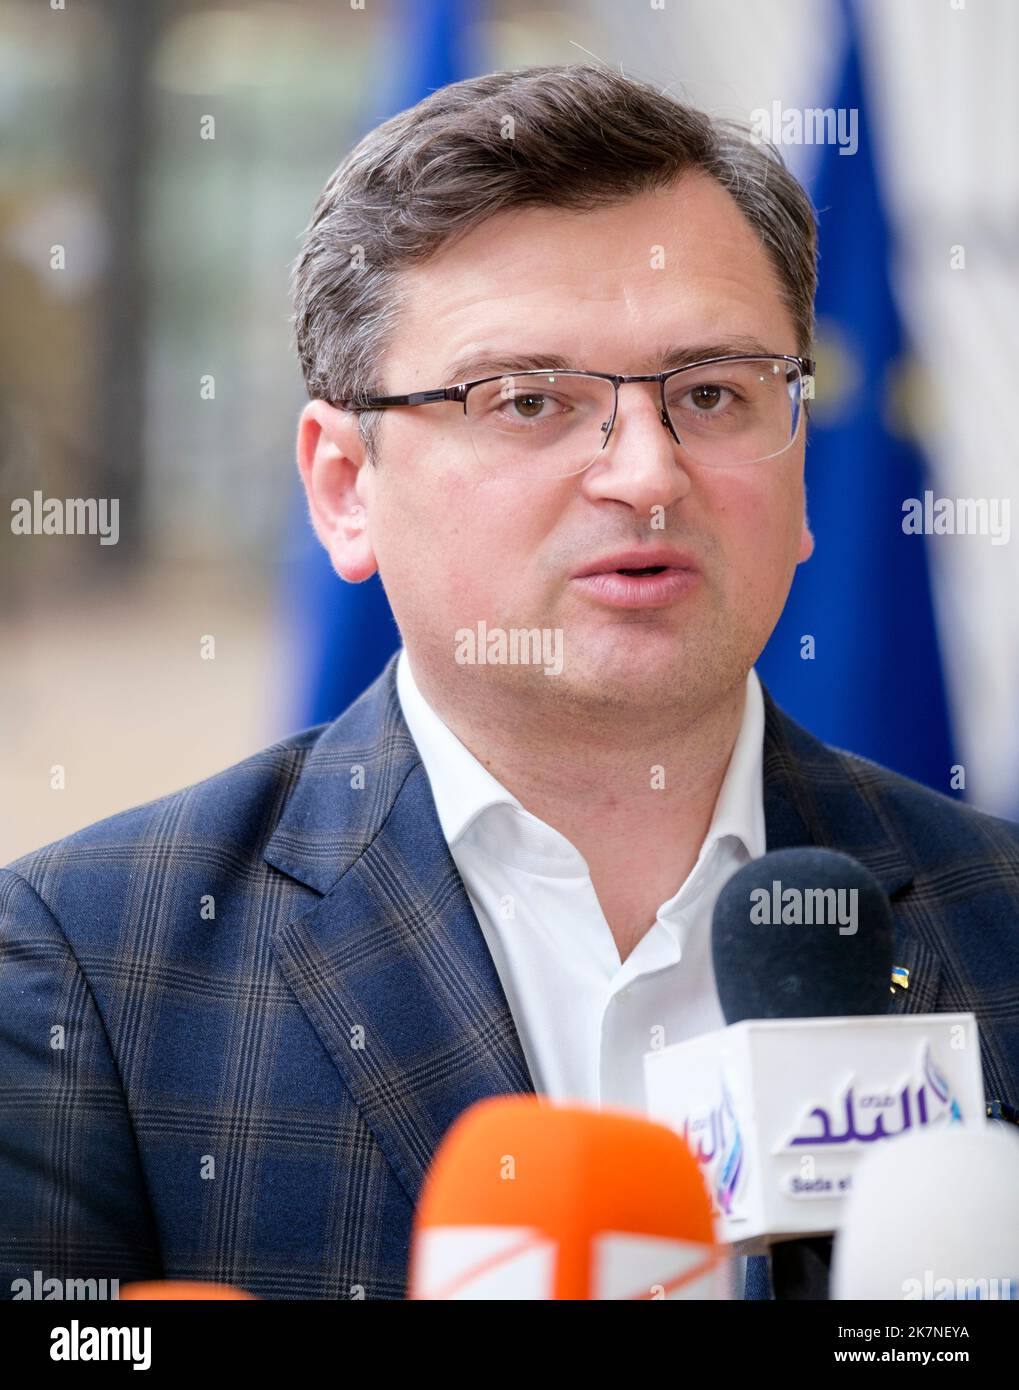 Bélgica, Bruselas, el 16 de mayo de 2022: Dmytro Ivanovytch Kuleba, Ministro de Asuntos Exteriores, asistió a una reunión sobre la guerra en Ucrania y las relaciones Foto de stock